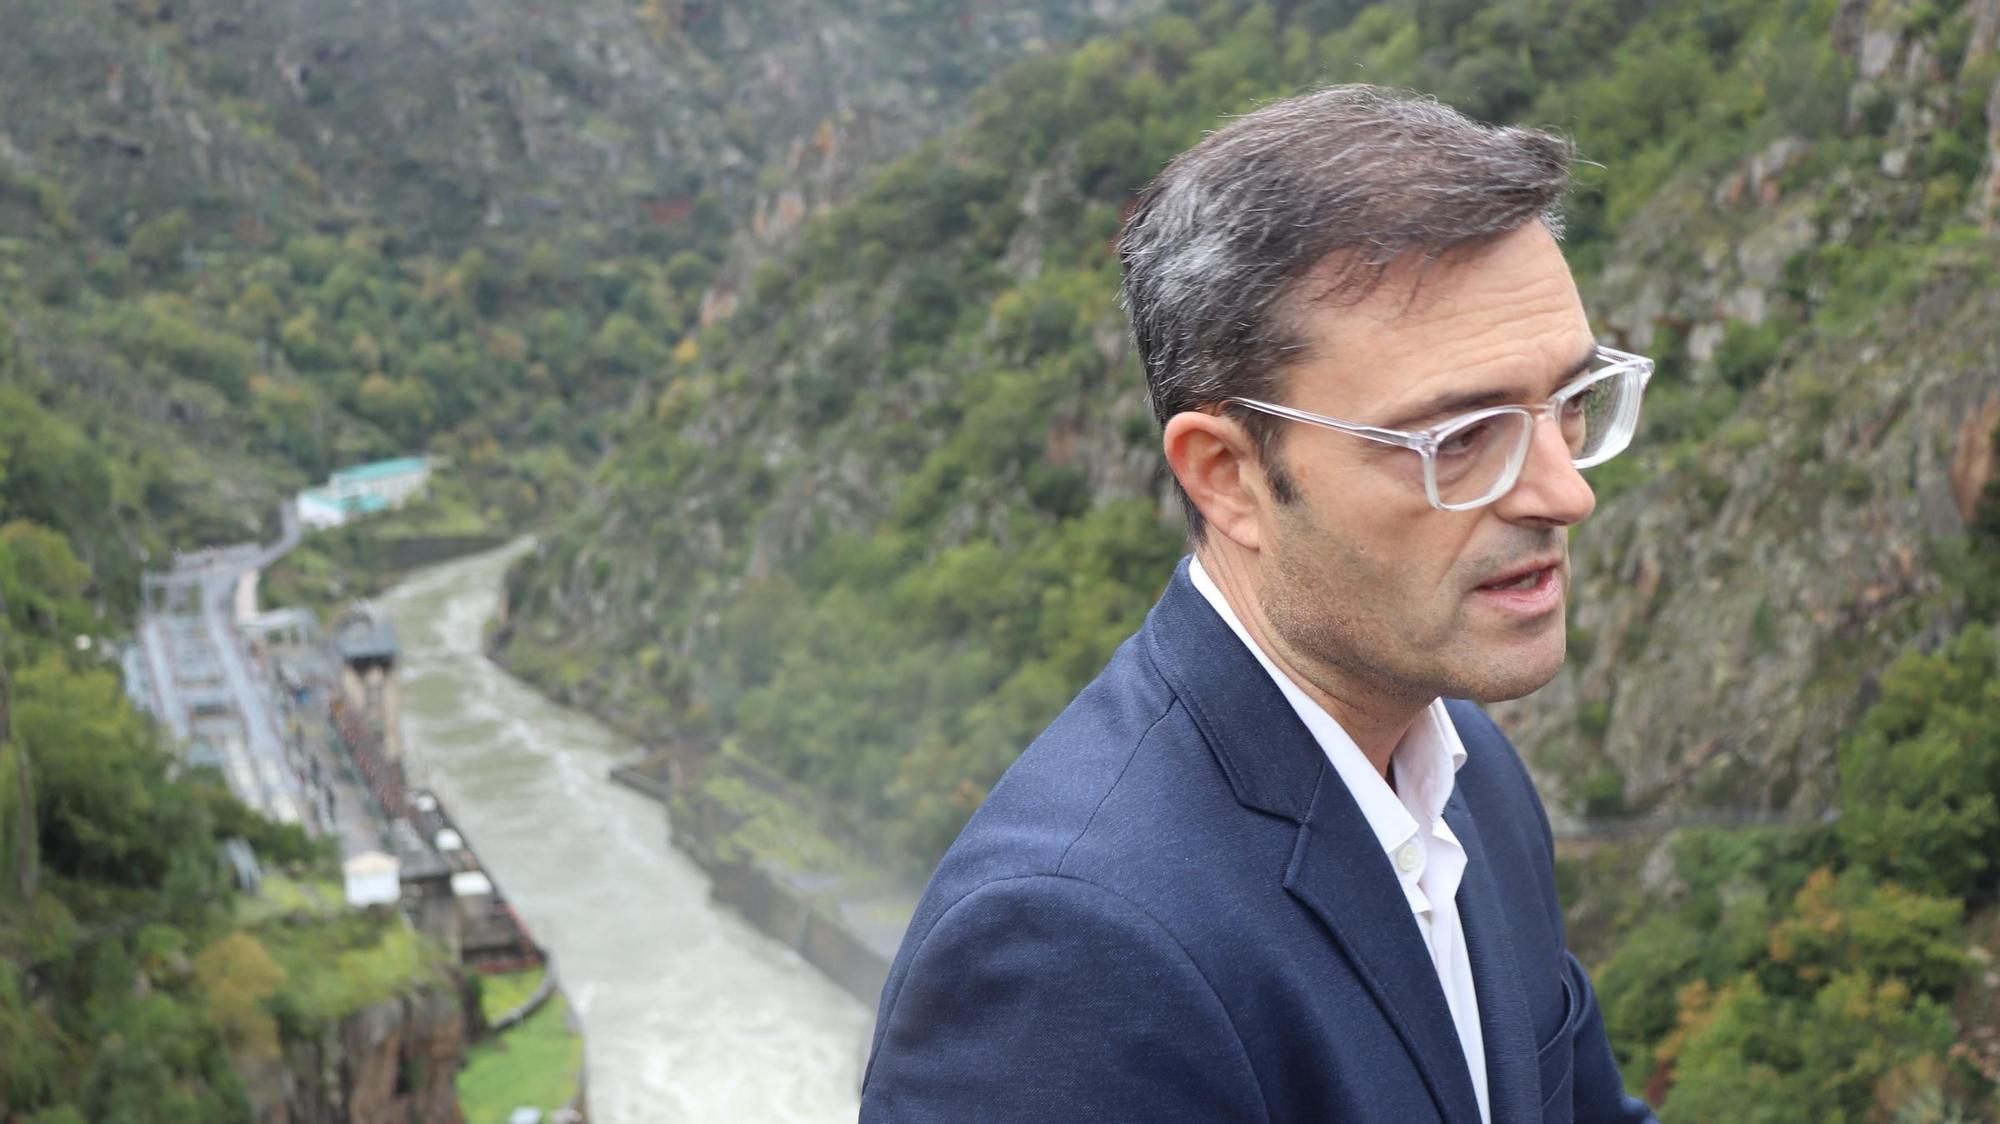 El turismo llega a la hidroeléctrica más grande de Galicia